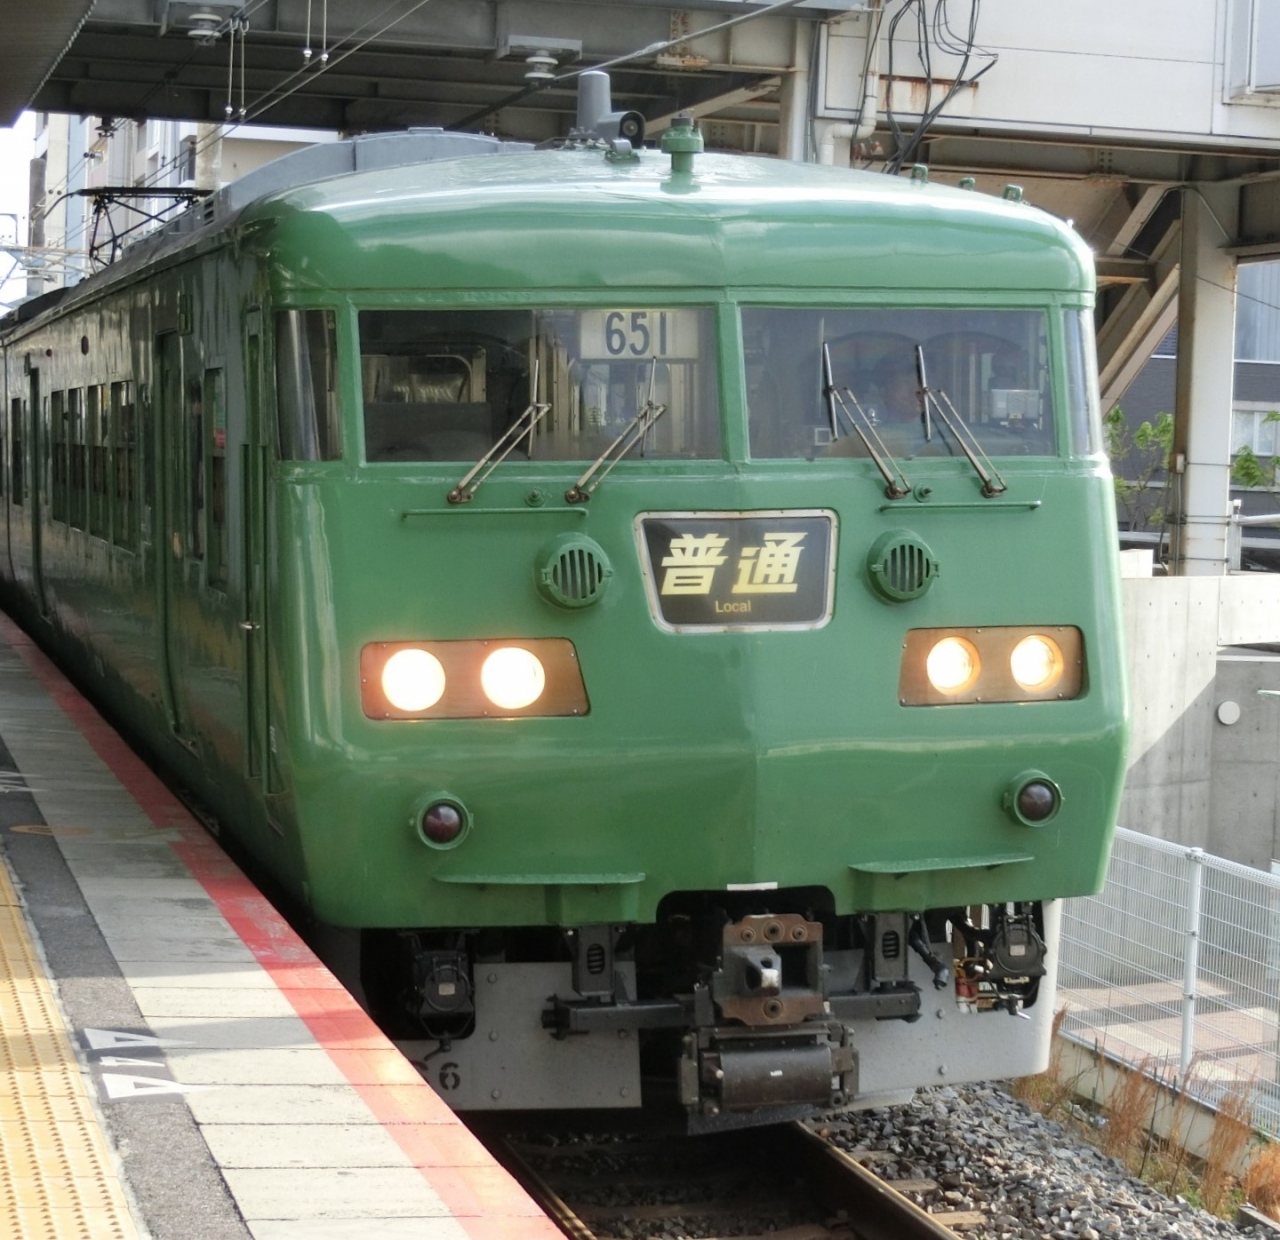 19年 超大型連休の旅の思い出 緑の電車と 草津 滋賀 滋賀県 の旅行記 ブログ By Sh 50さん フォートラベル